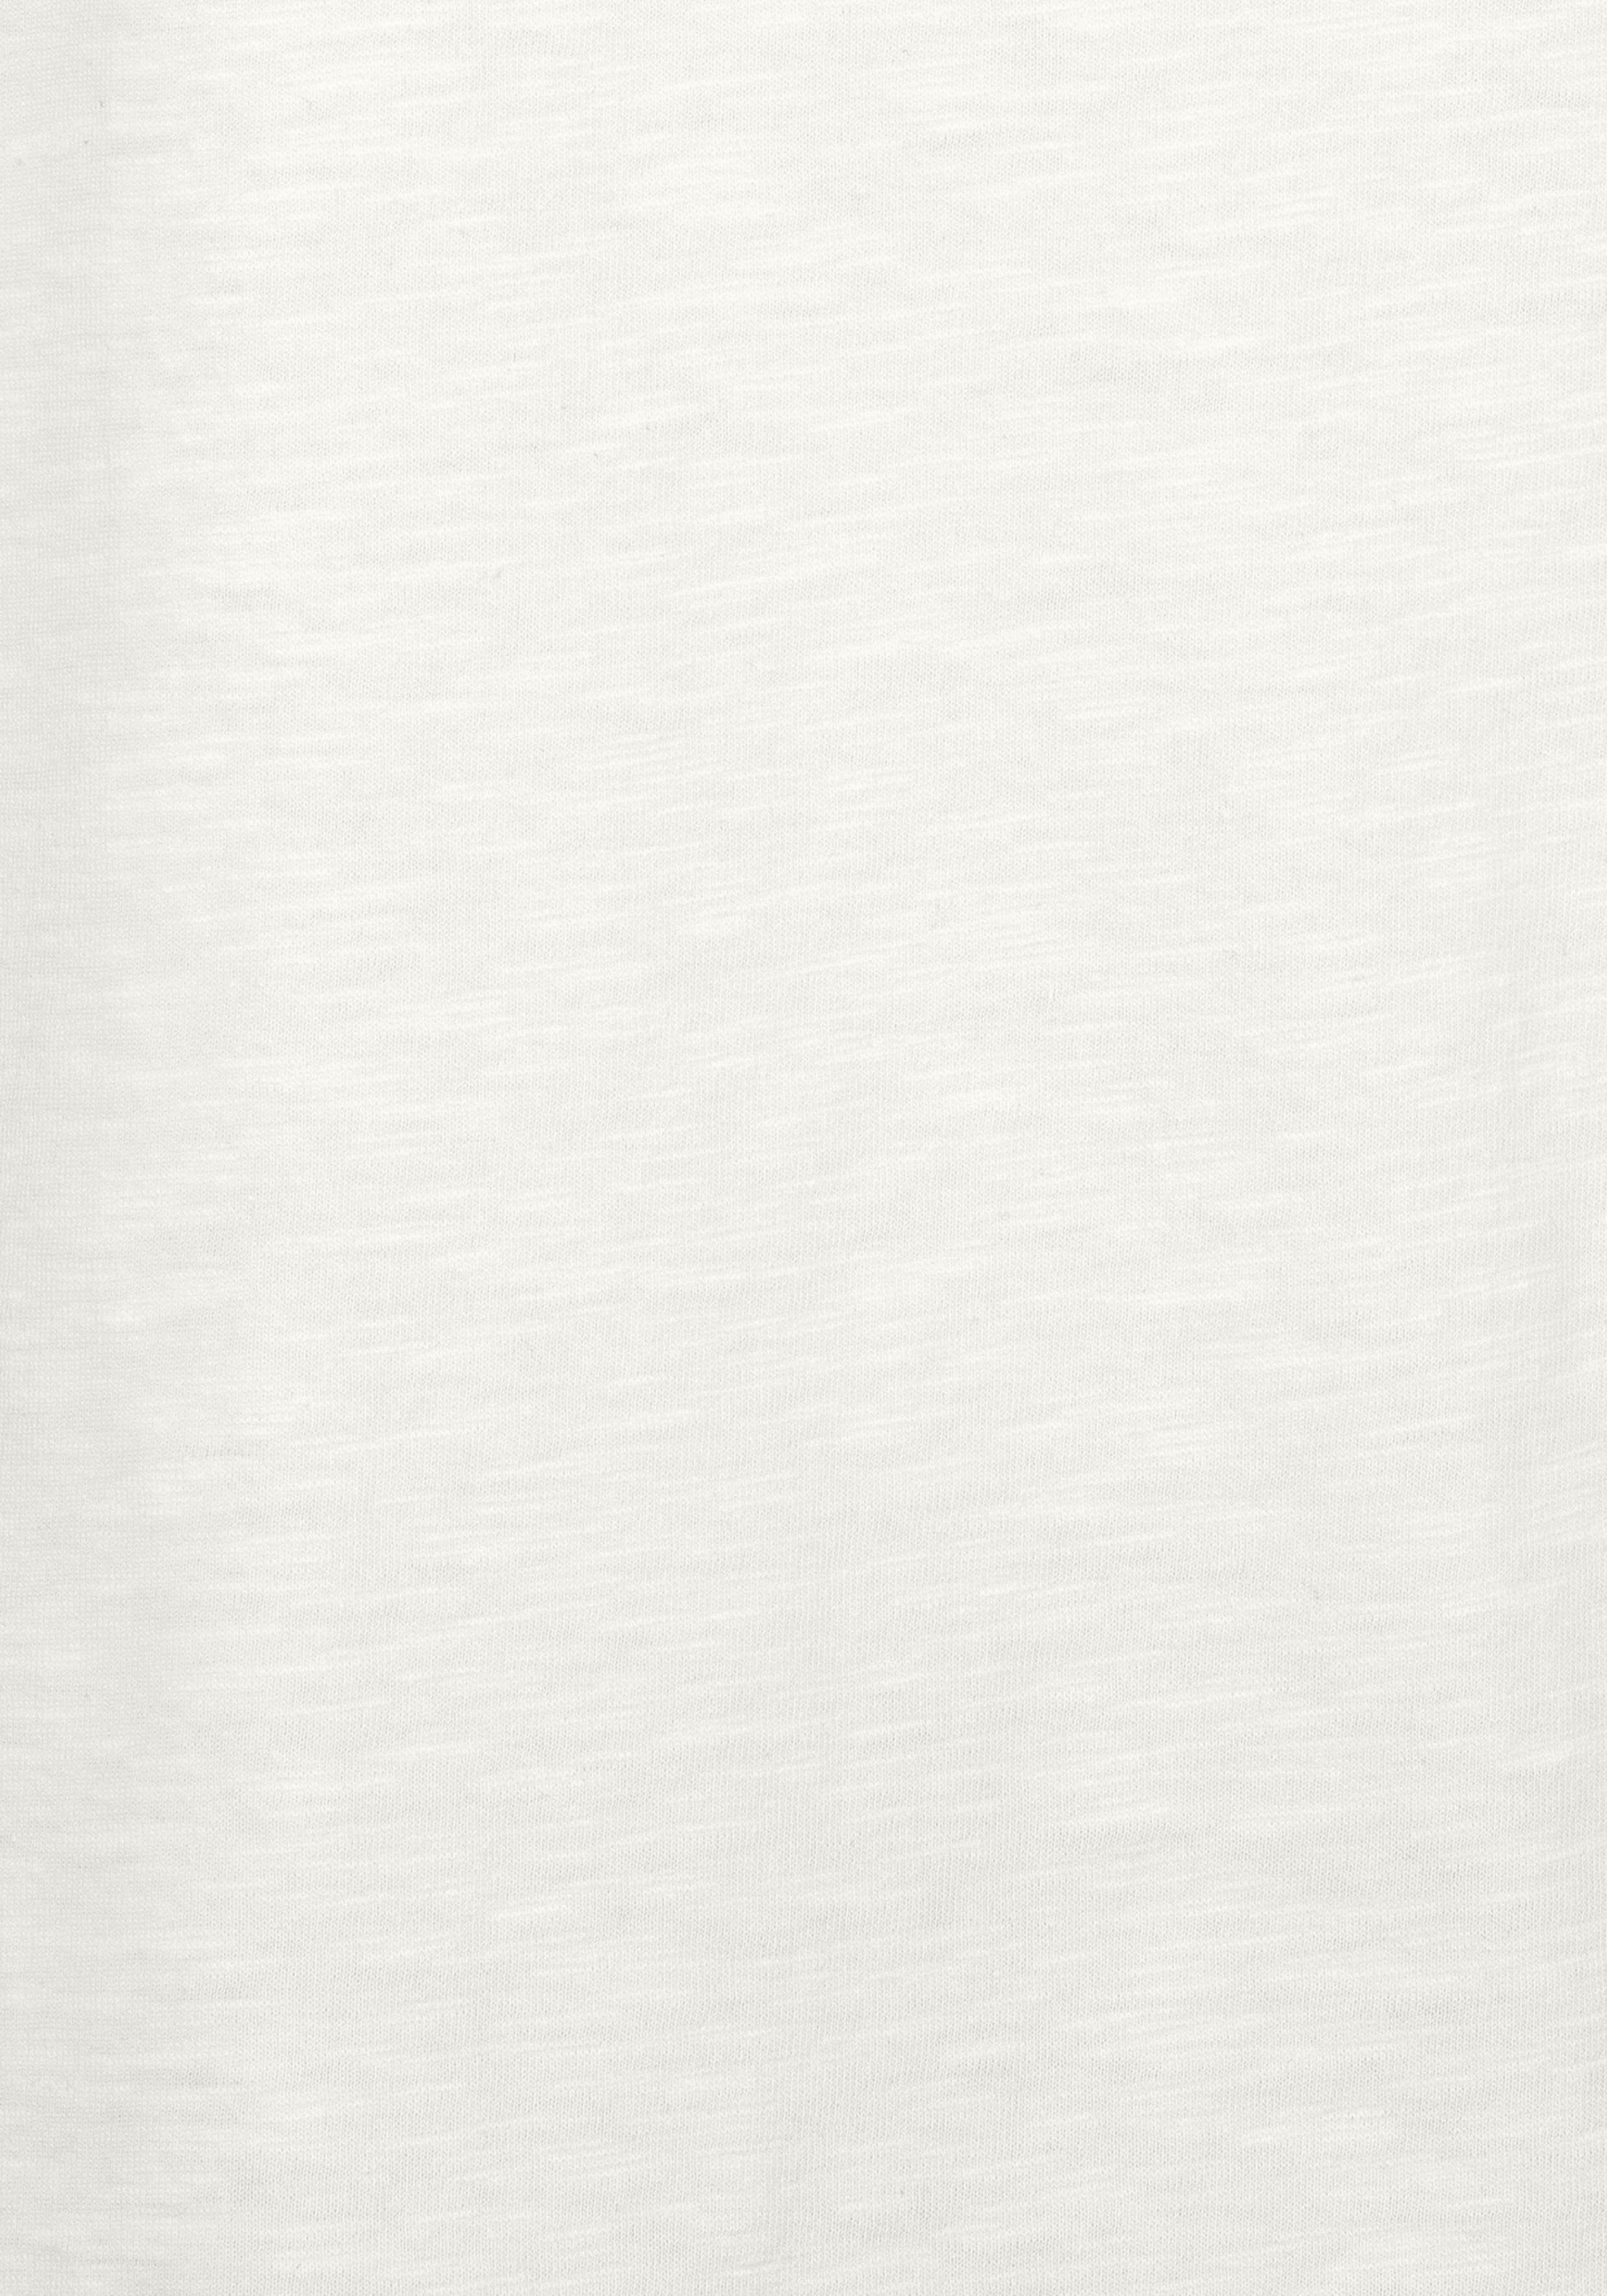 Vivance T-Shirt (Packung, 2er-Pack) an schwarz, Häkelspitze der mit creme Schulter